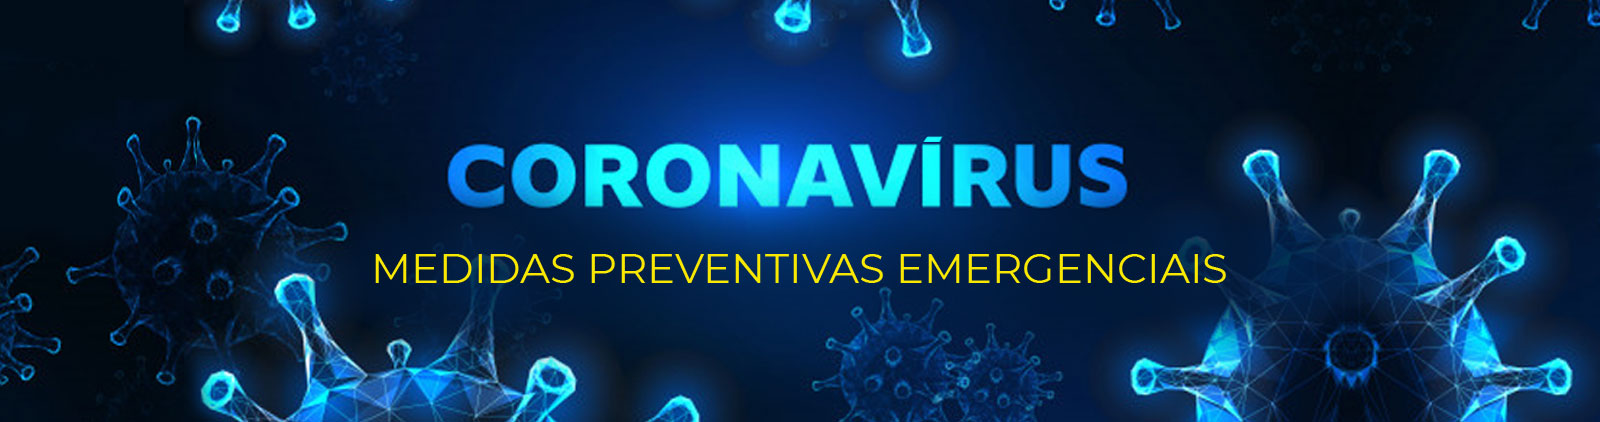 Coronavirus - Medidas Preventivas Emergenciais